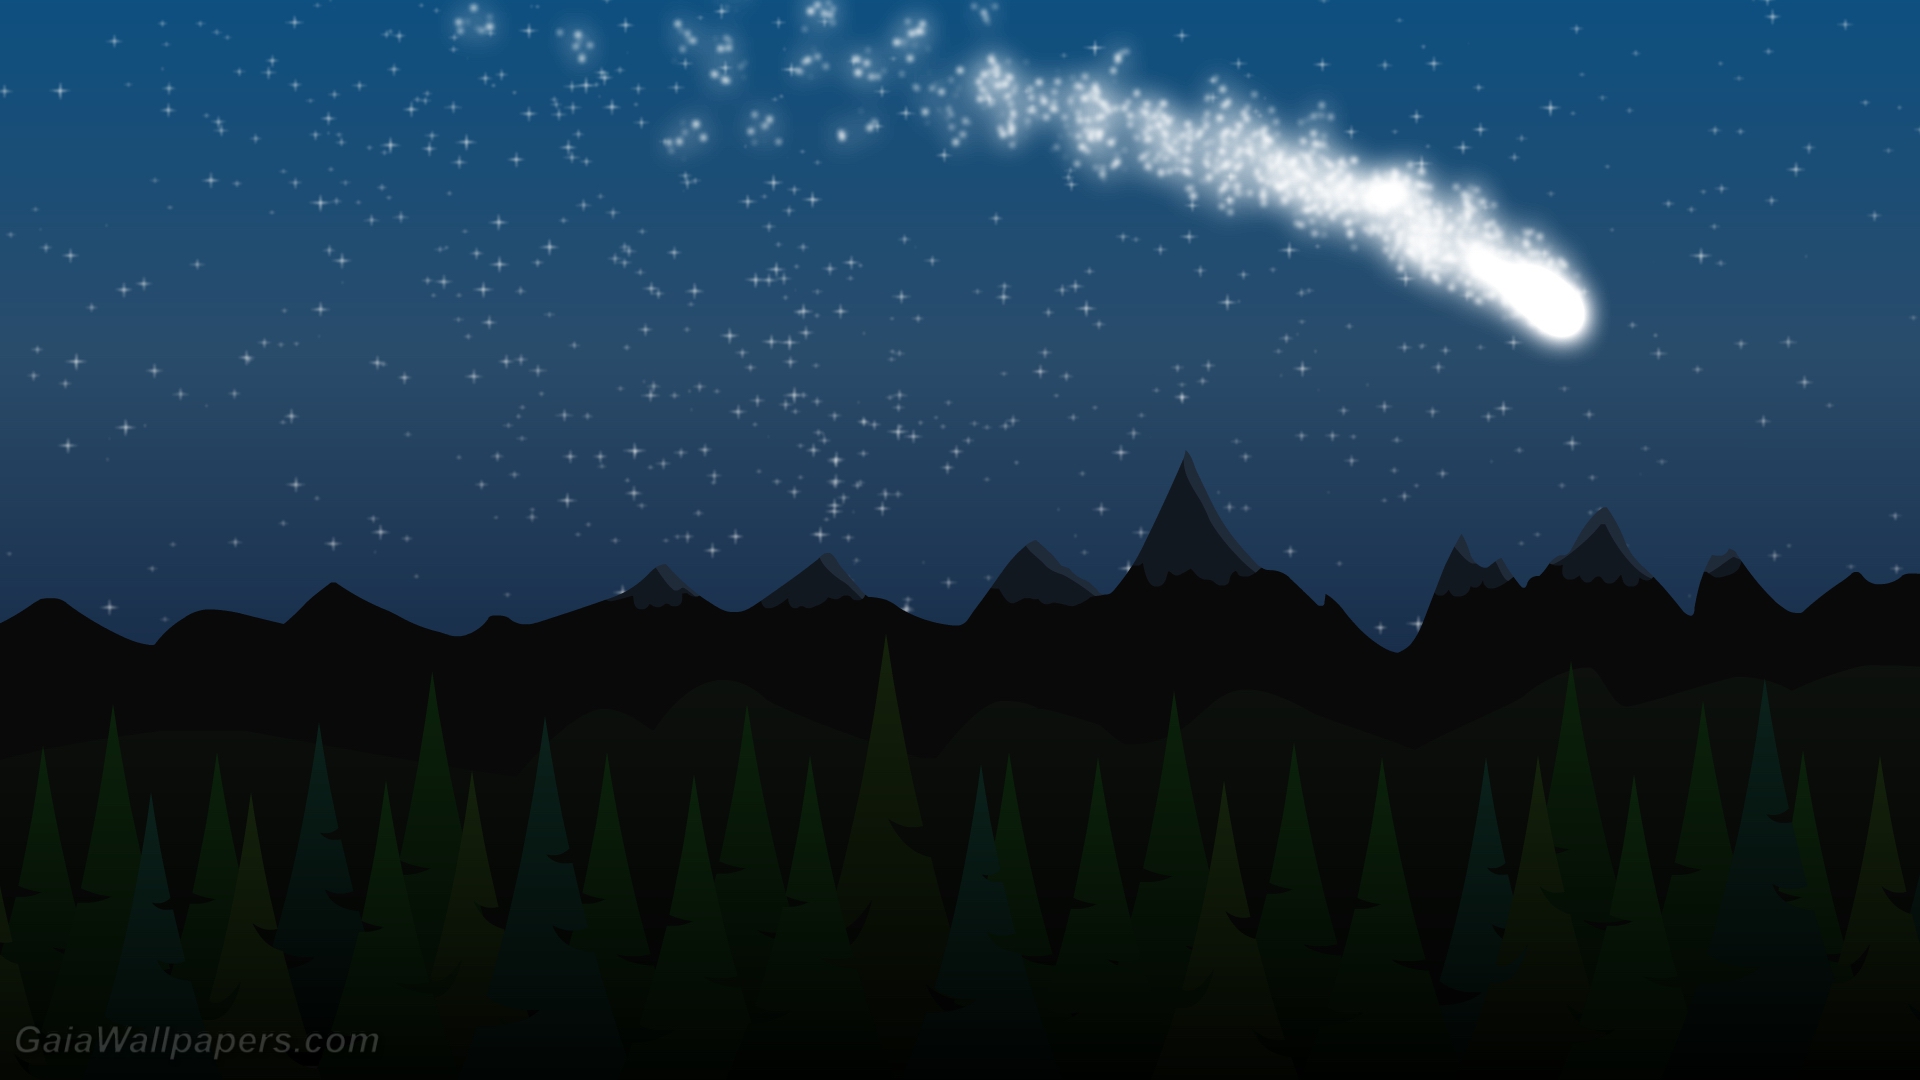 Comet in the starry sky - Free desktop wallpapers